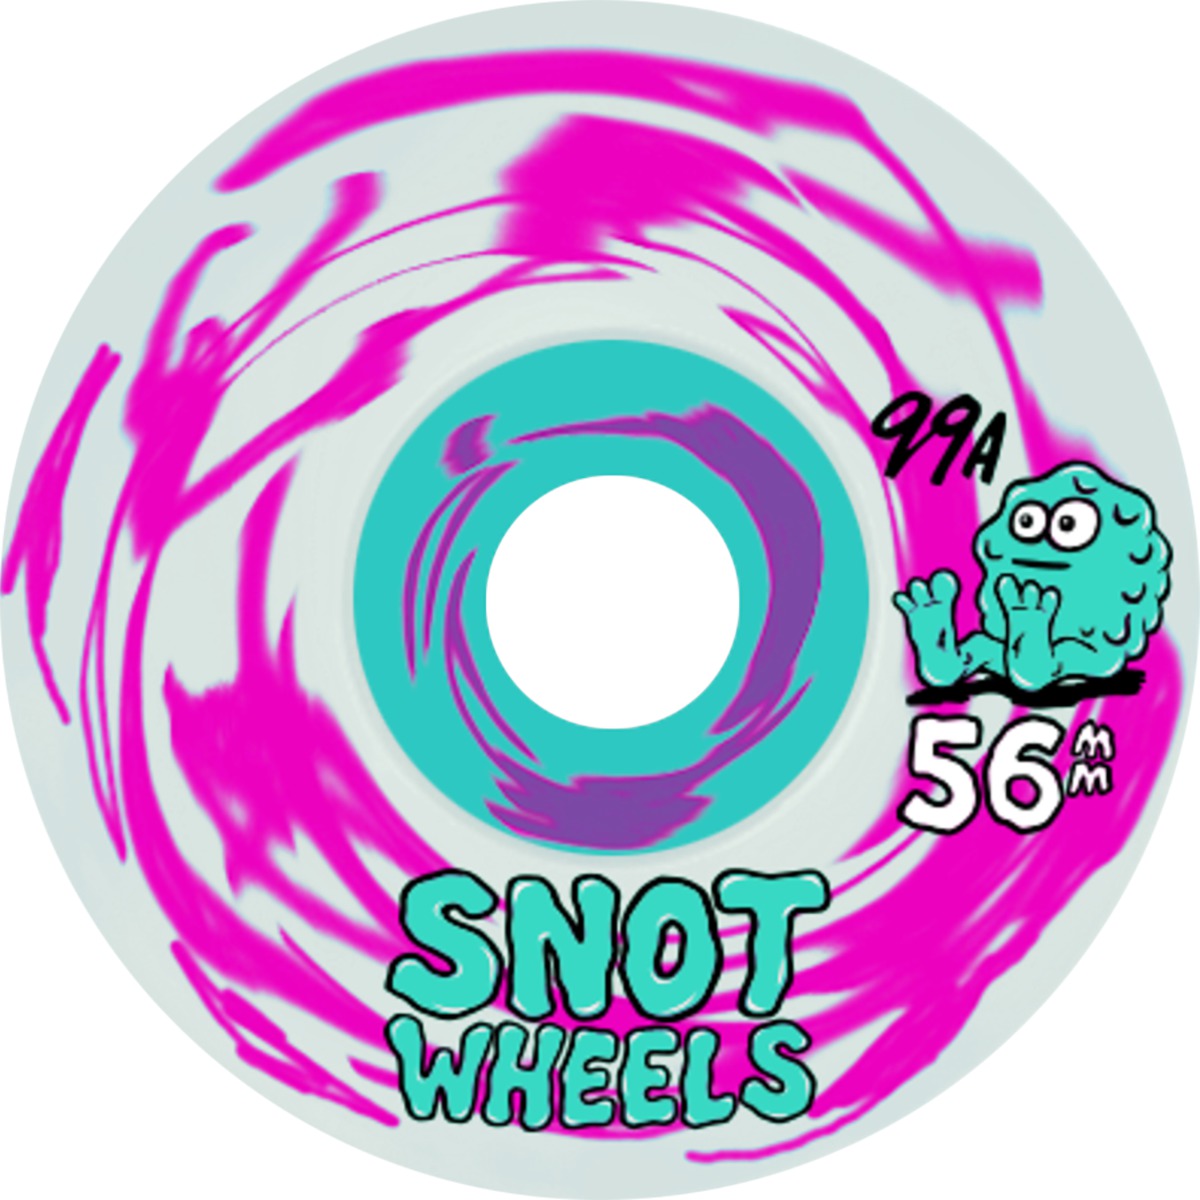 Snot Wheel Co. - Swirls Pink / White Skateboard Wheels - 56mm 99a (Set of 4)